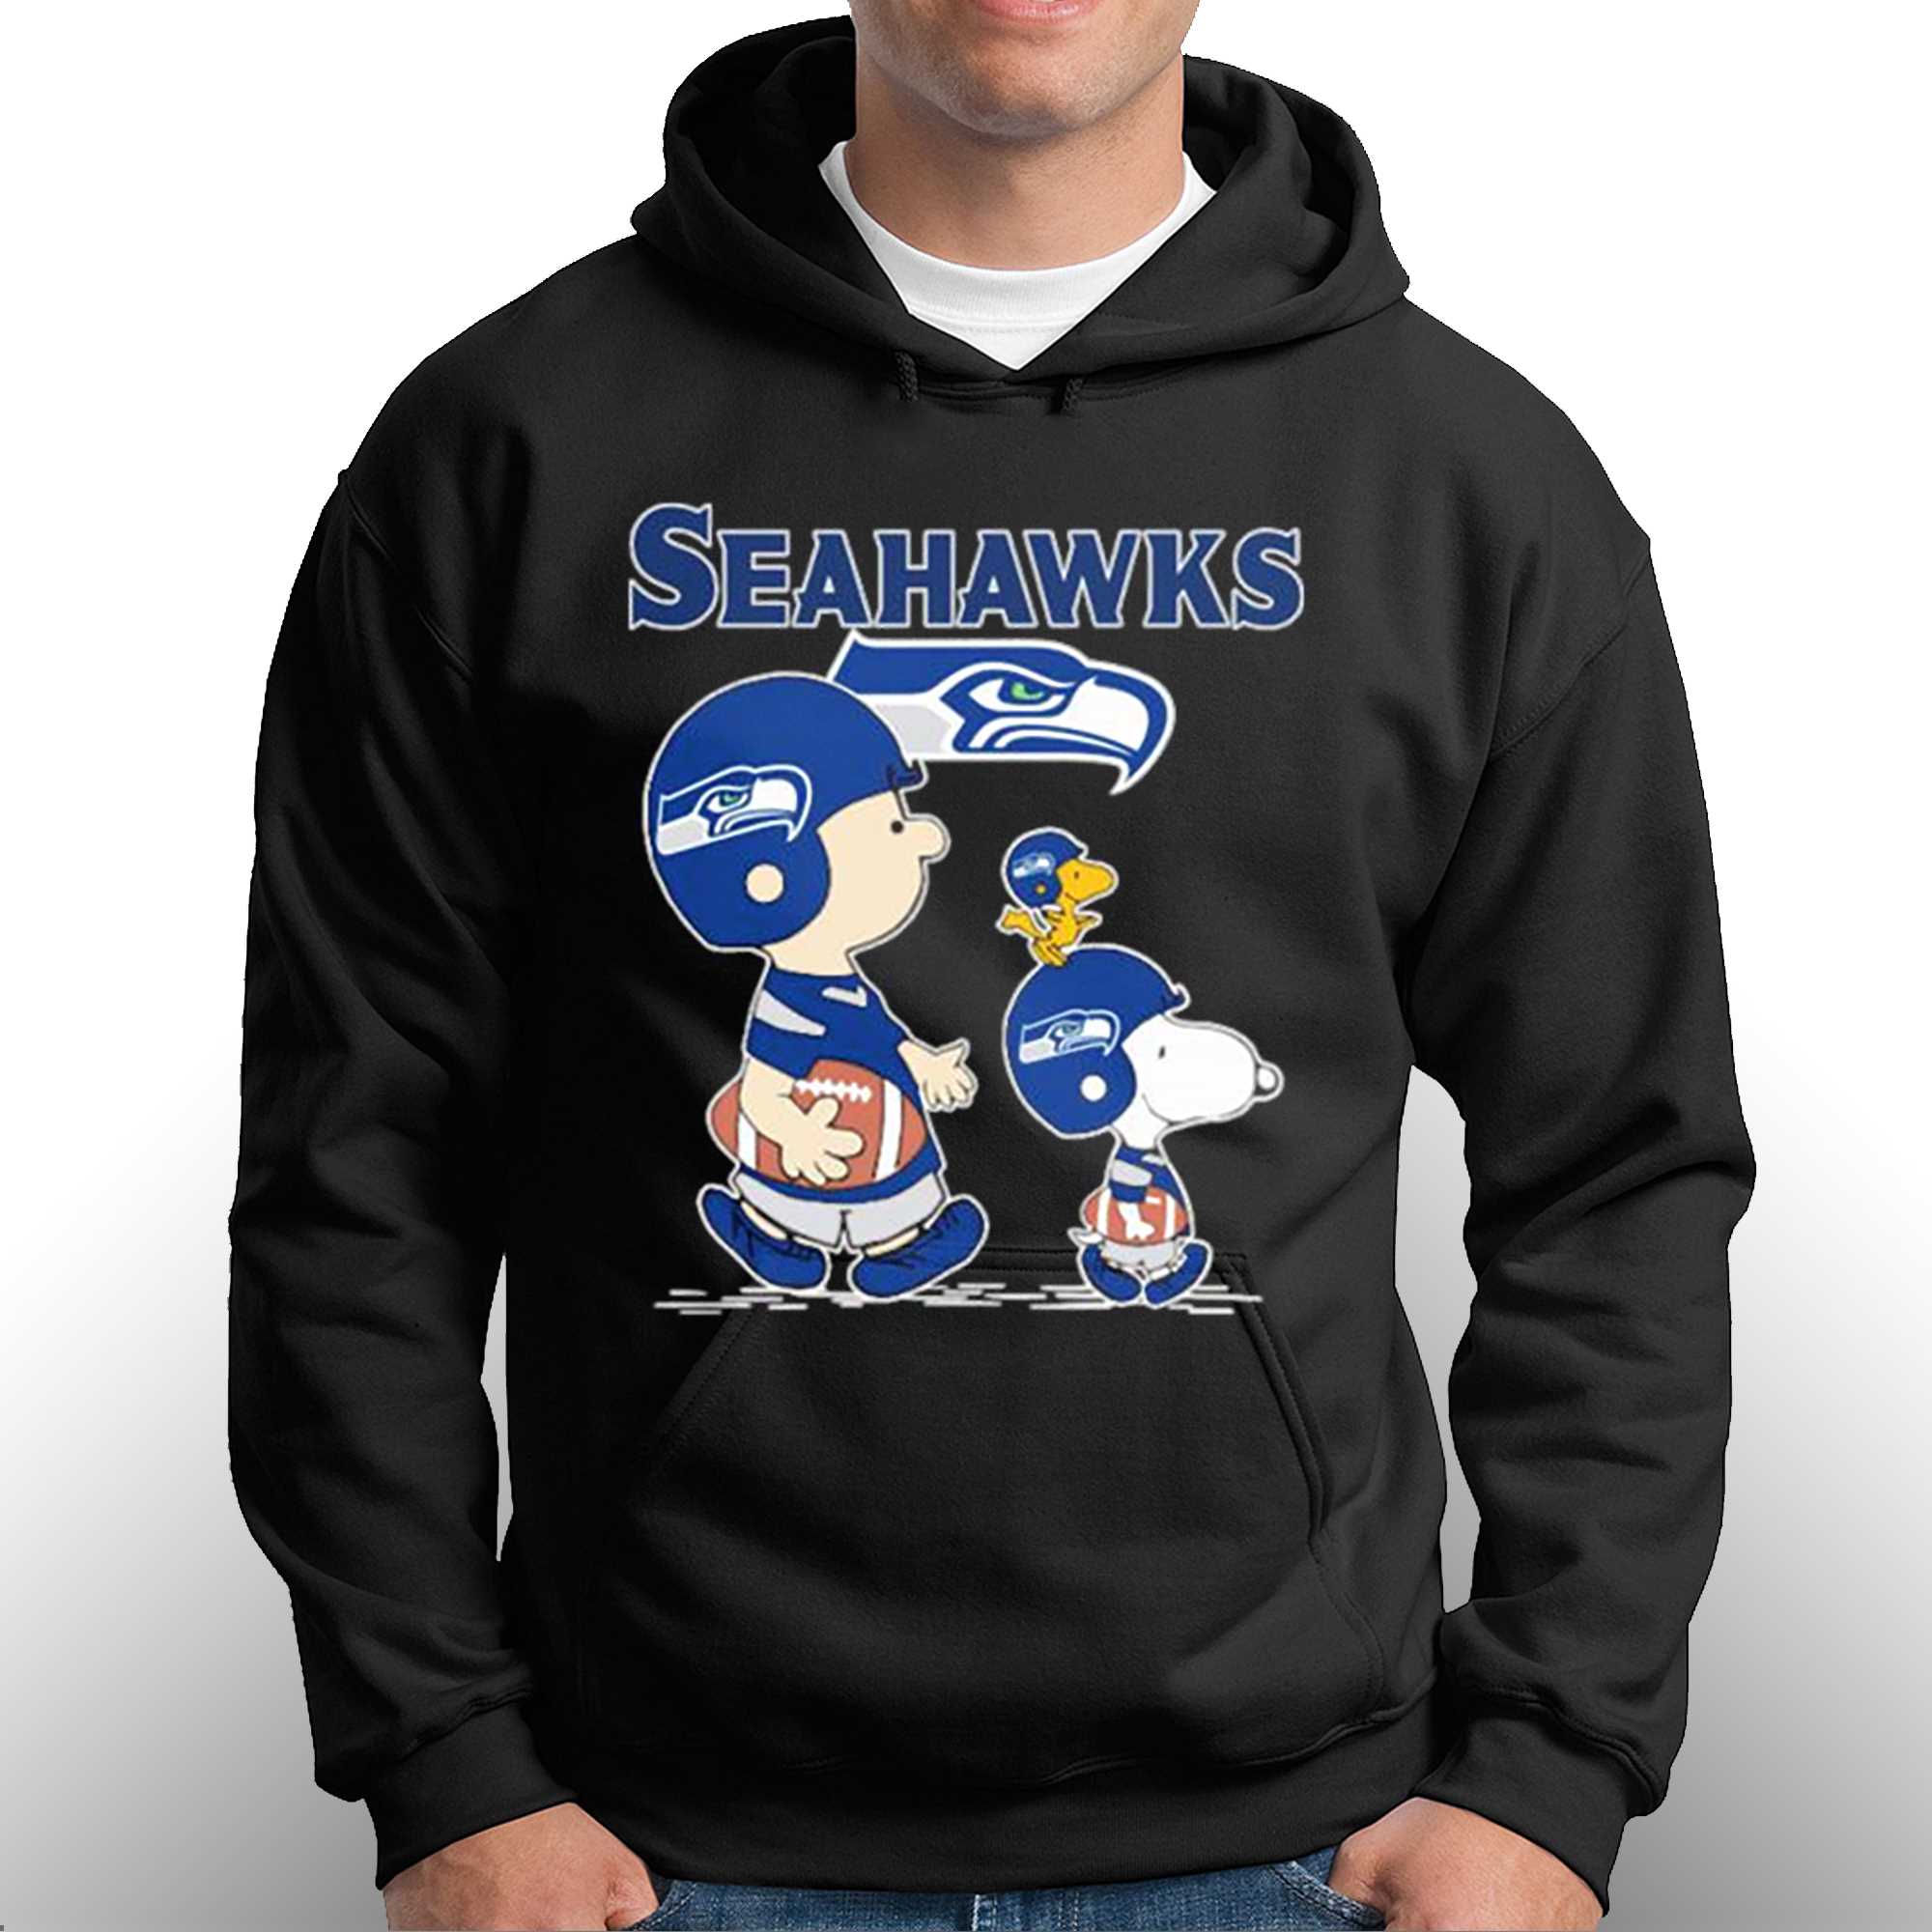 Seattle Seahawks Gridiron Pullover Hoodie Sweatshirt